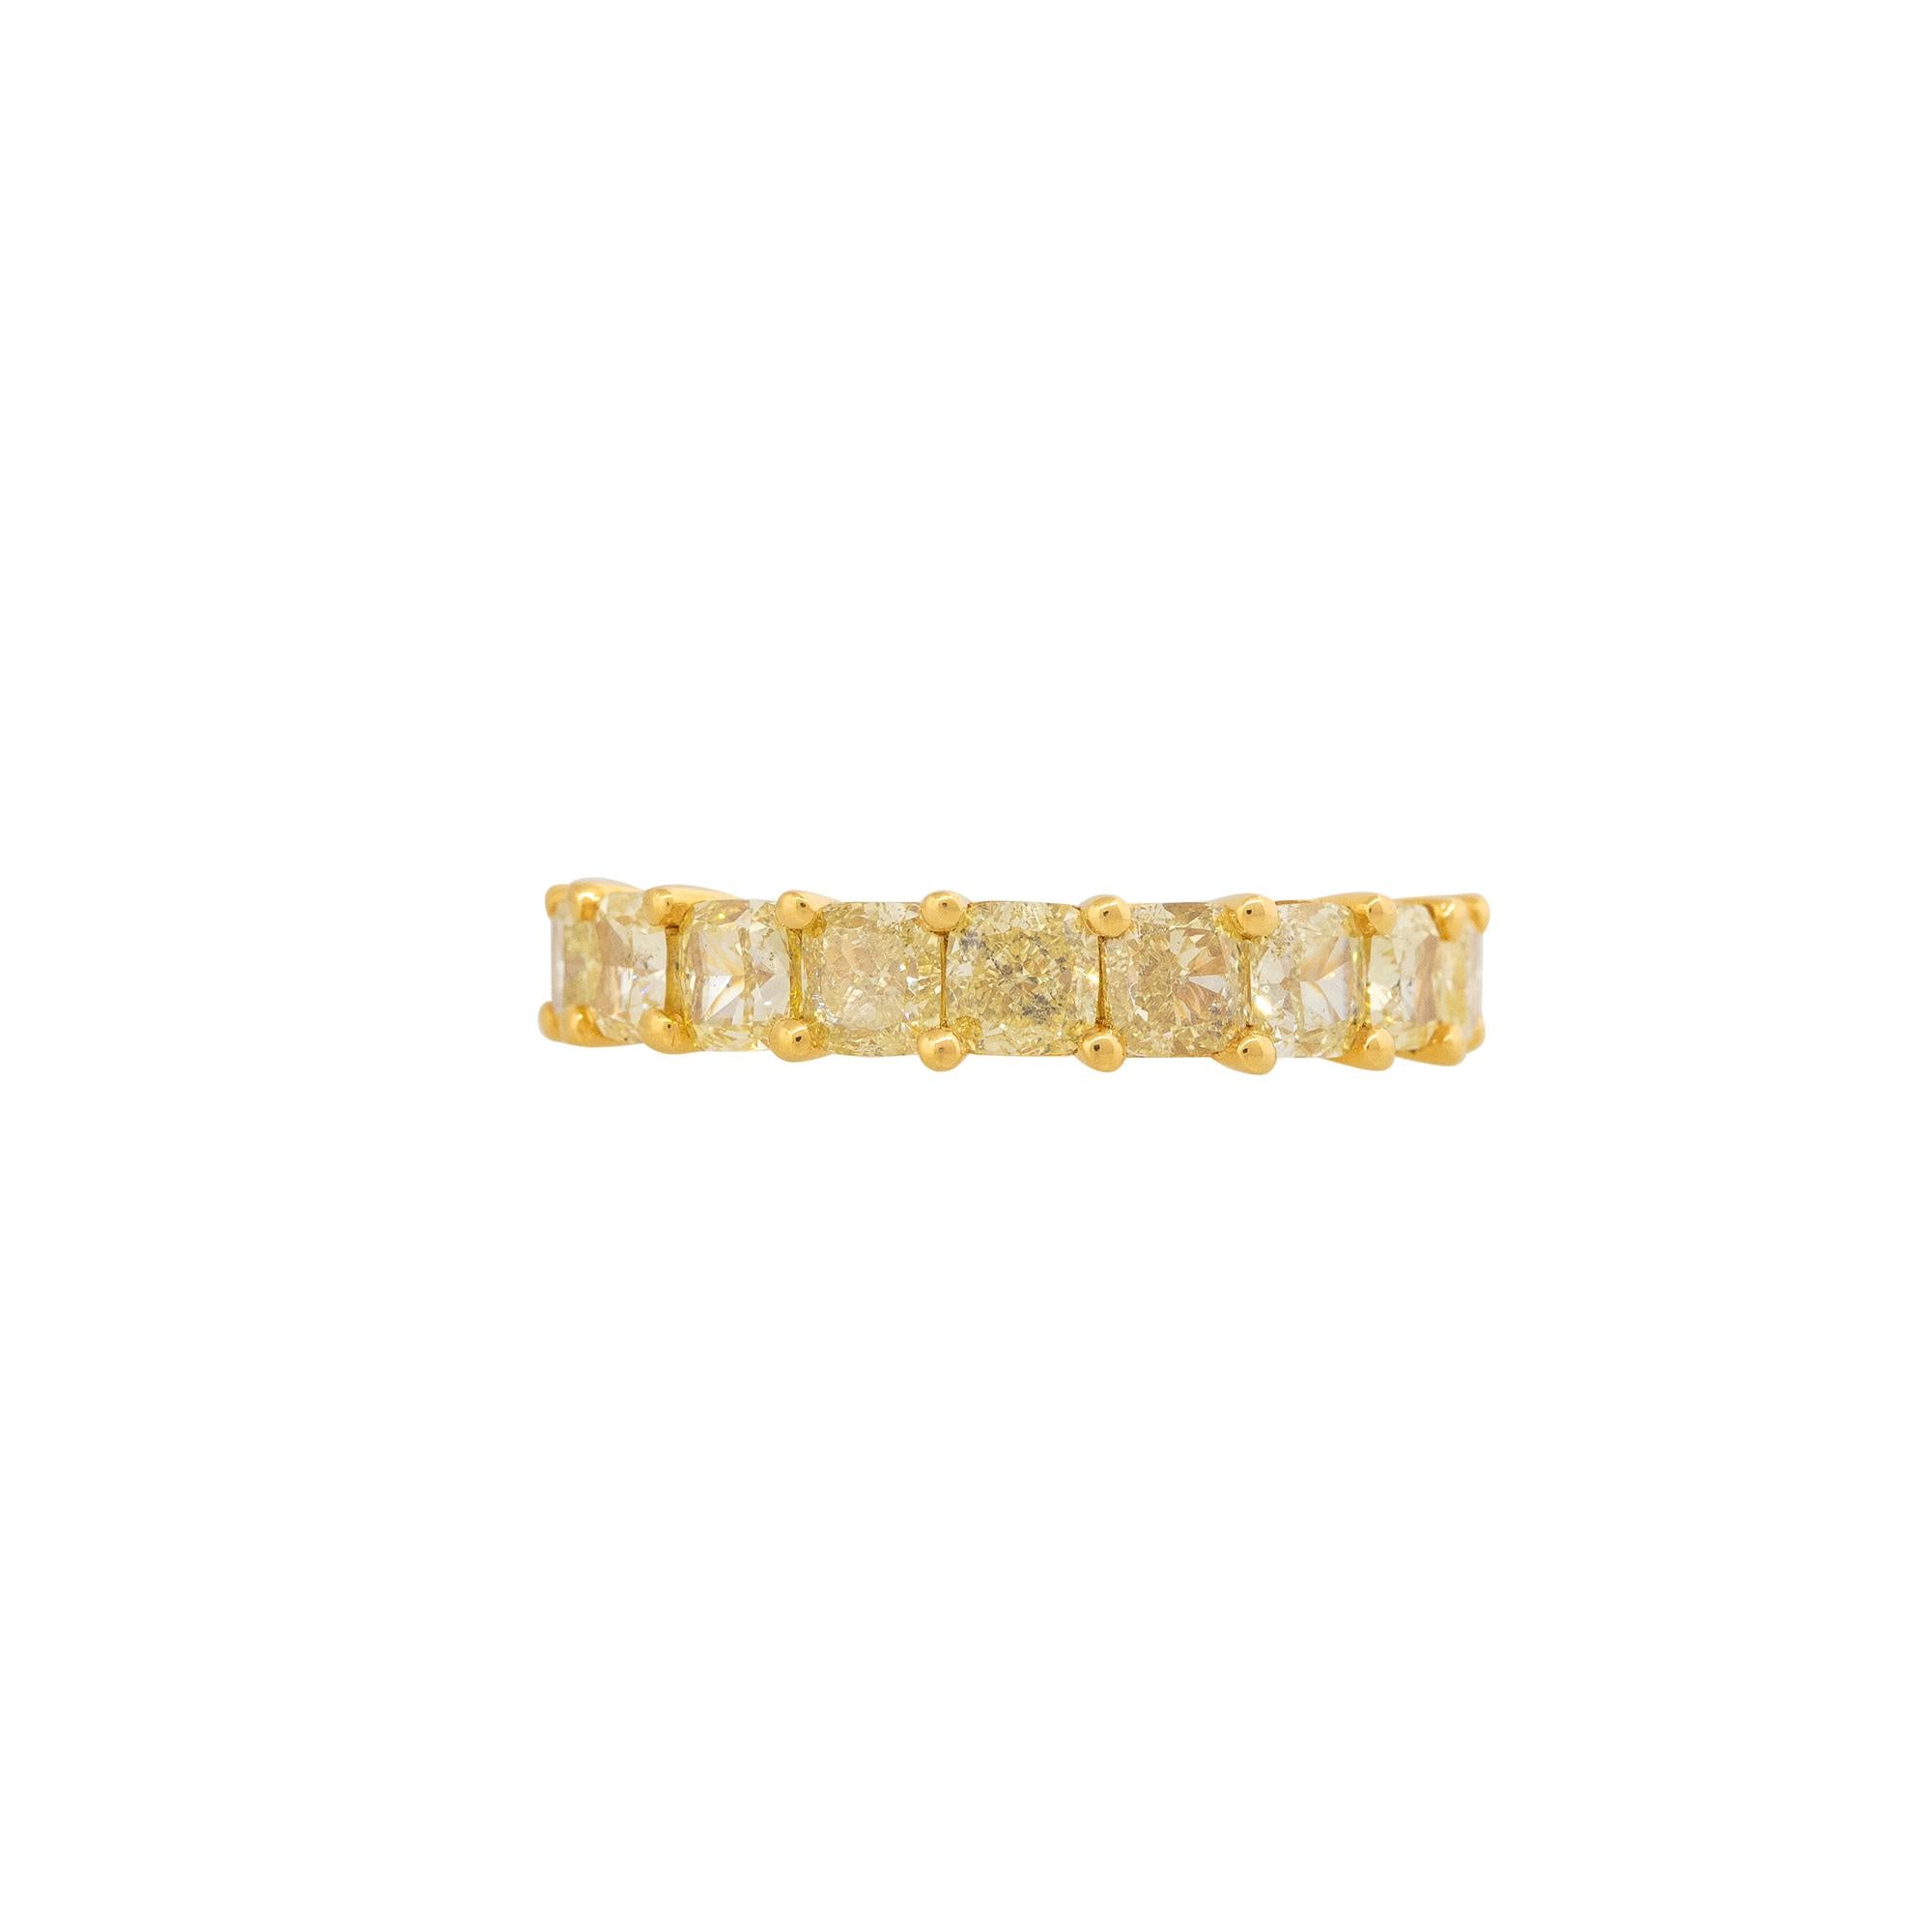 18k Gelbgold 2,98ctw natürlichen gelben Diamanten Cushion Cut Band

Produkt: Diamantband im Kissenschliff
MATERIAL: 18k Gelbgold
Diamant-Details: Es gibt ungefähr 2,98 Karat Diamanten im Kissenschliff (9 Steine)
Diamant Reinheit: Diamanten sind